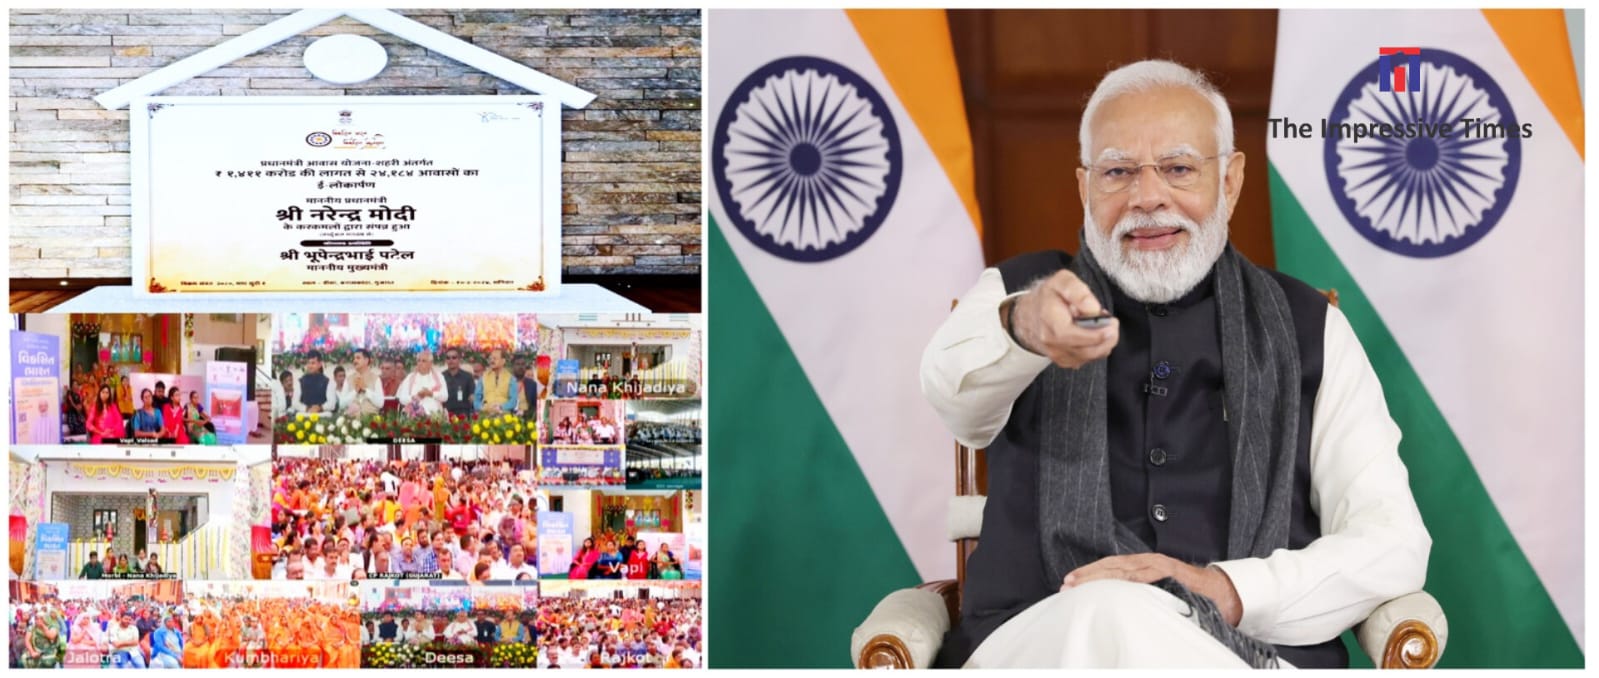 PM addresses ‘Viksit Bharat Viksit Gujarat’ program